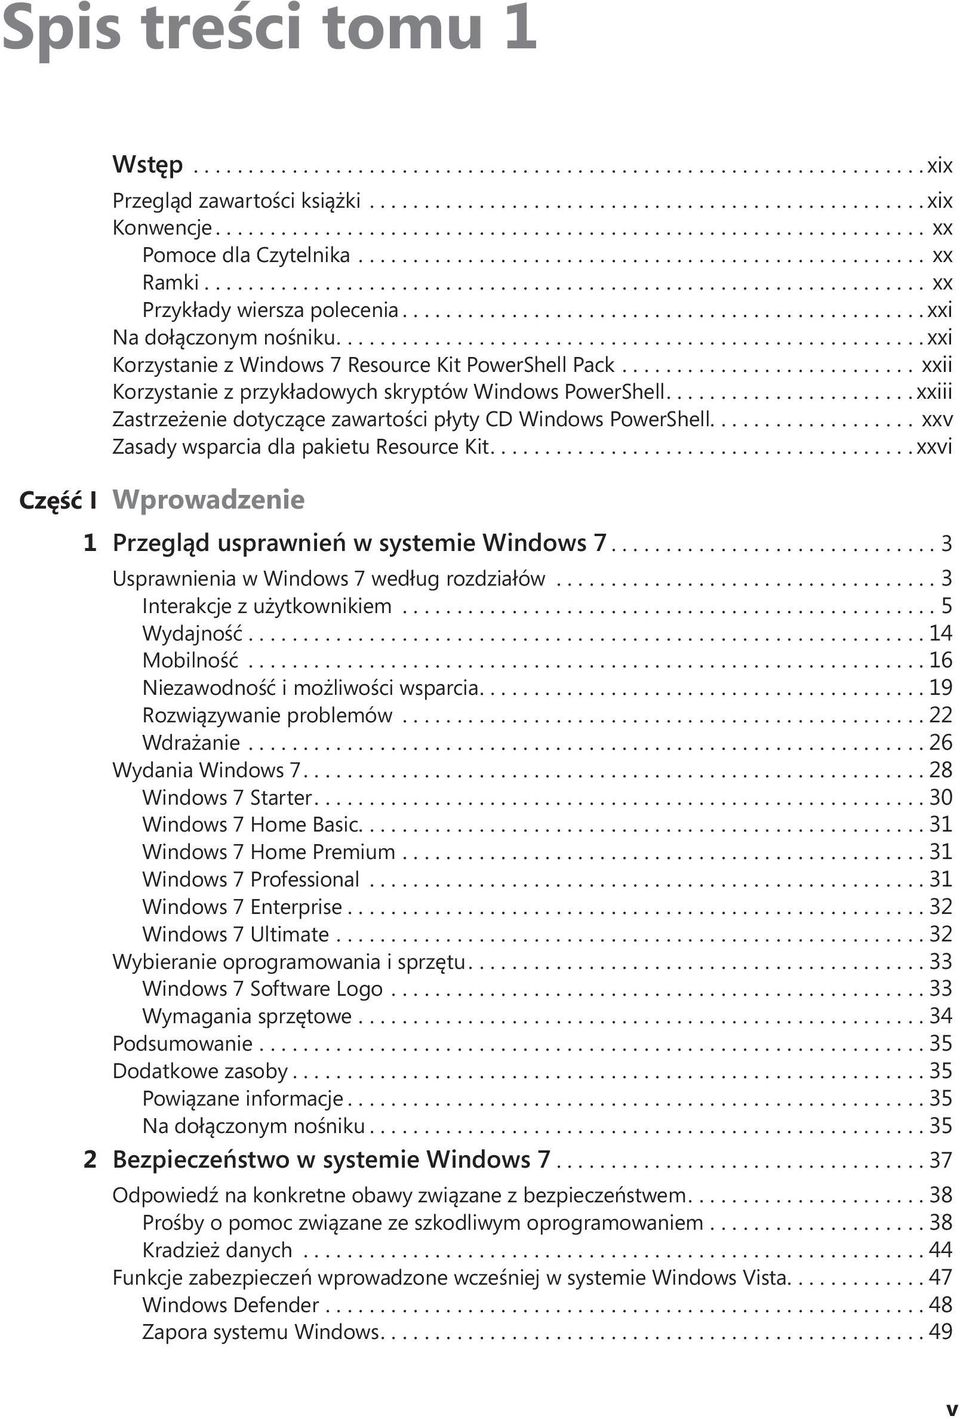 ... xxv Zasady wsparcia dla pakietu Resource Kit.... xxvi Część I Wprowadzenie 1 Przegląd usprawnień w systemie Windows 7...3 Usprawnienia w Windows 7 według rozdziałów...3 Interakcje z użytkownikiem.